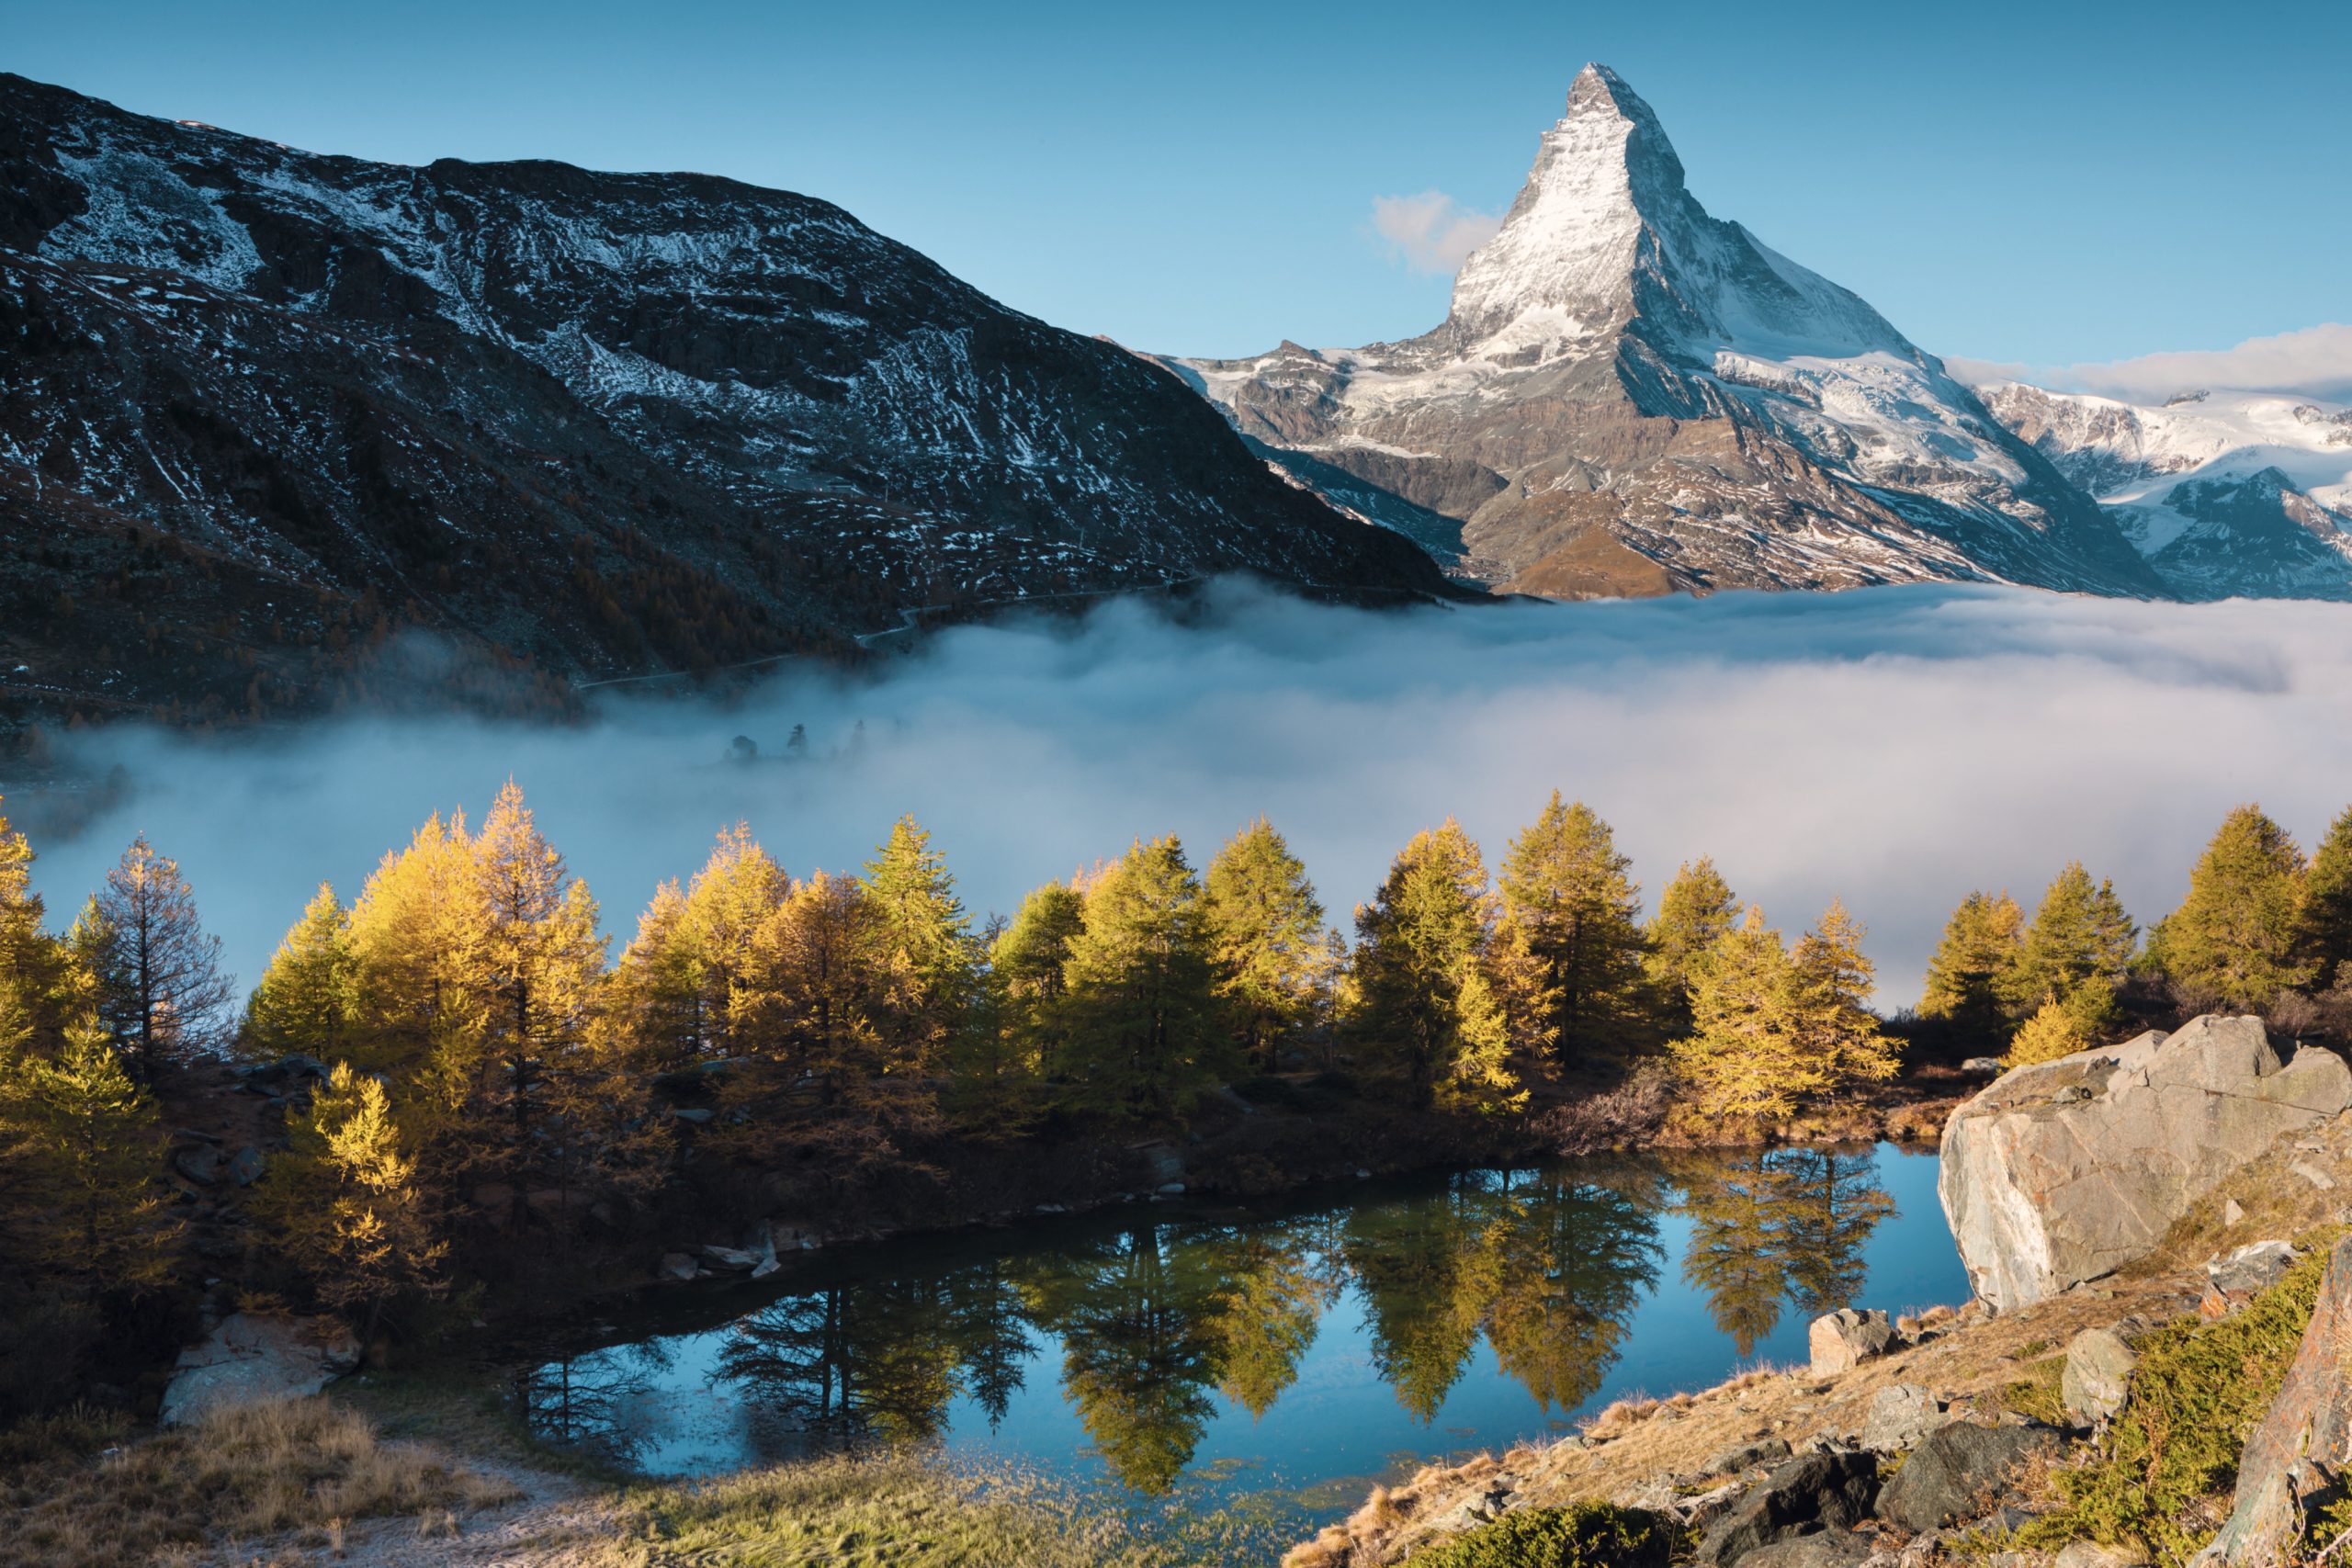 Schweiz. ganz natuerlich.                                        Der Grindjisee bei Zermatt mit dem Matterhorn im Hintergrund.